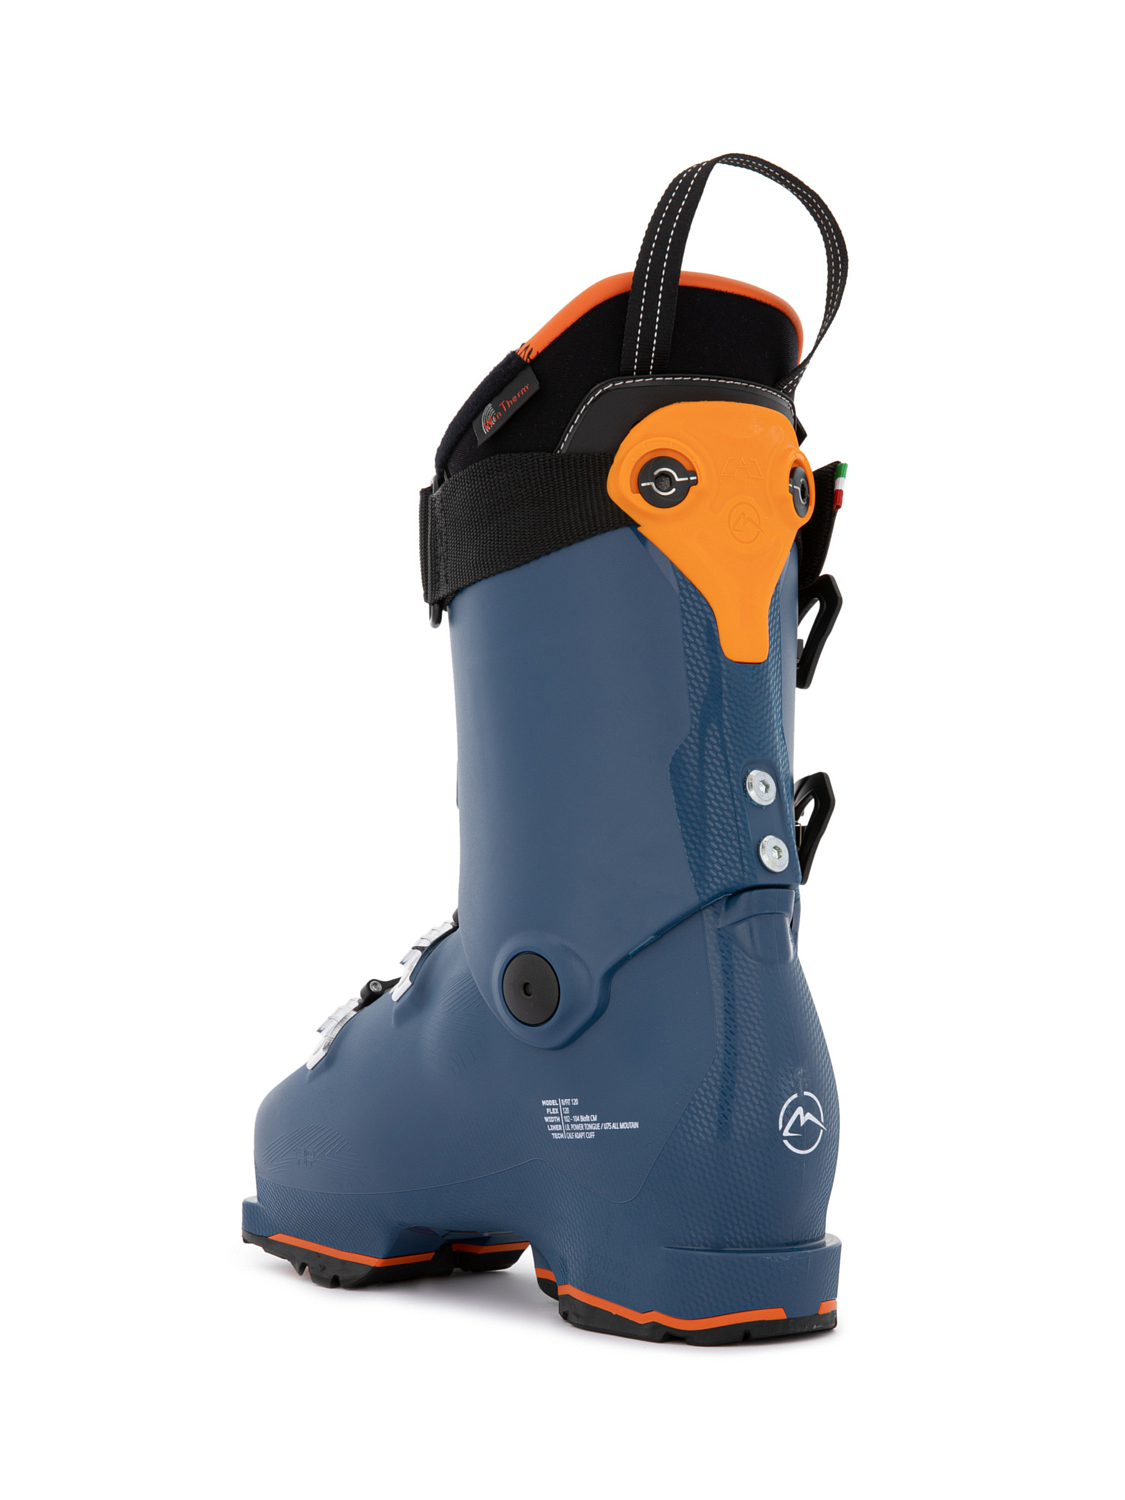 Горнолыжные ботинки ROXA Rfit 120 Gw Dark Blue/Orange